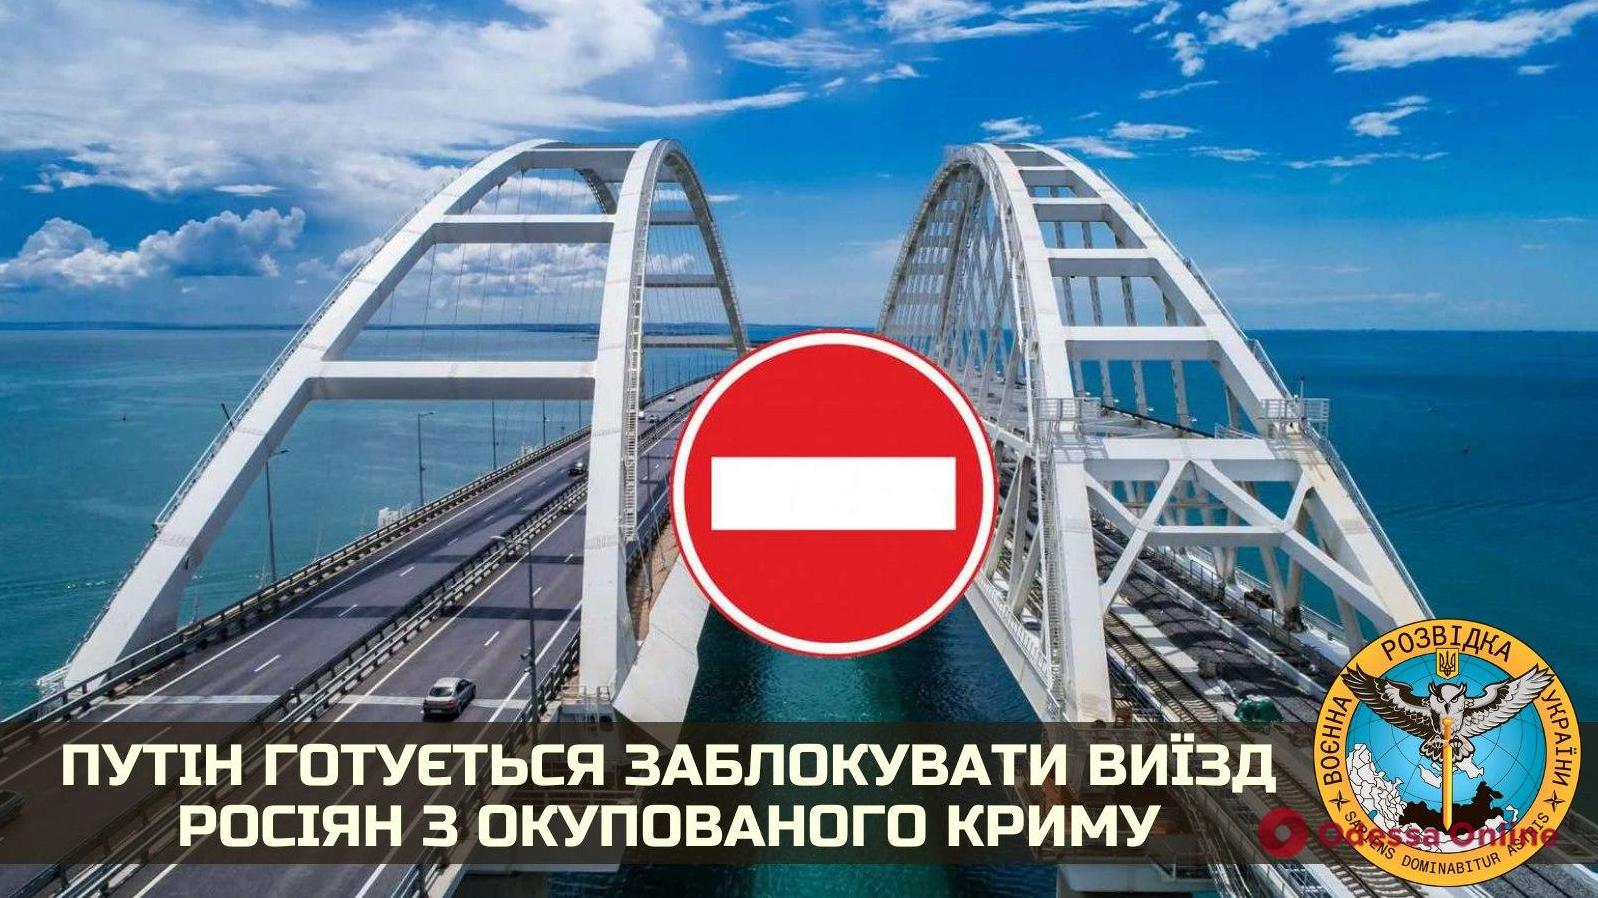 Стаття Путин готовится перекрыть Керченский мост: 600 тысяч человек окажутся в заложниках Ранкове місто. Київ